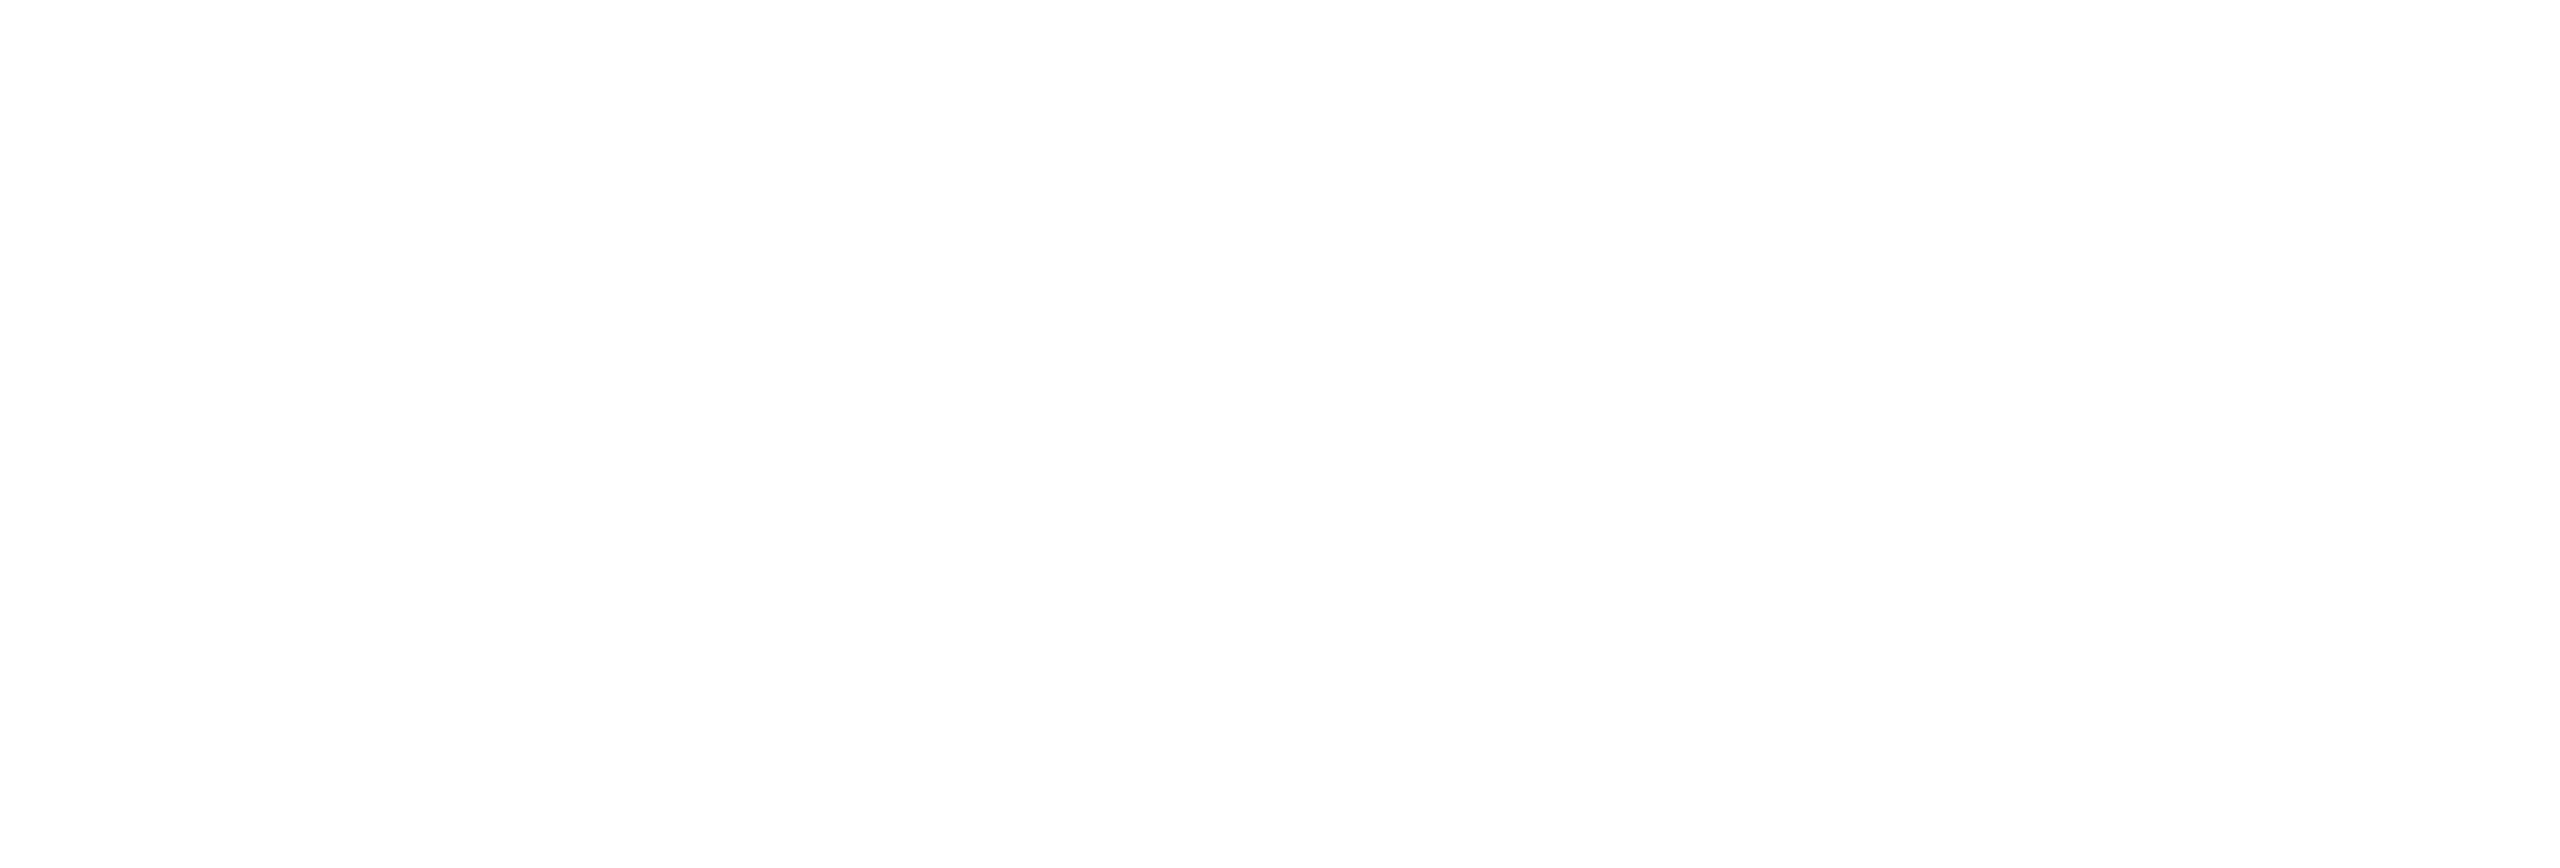 TTOY Digital